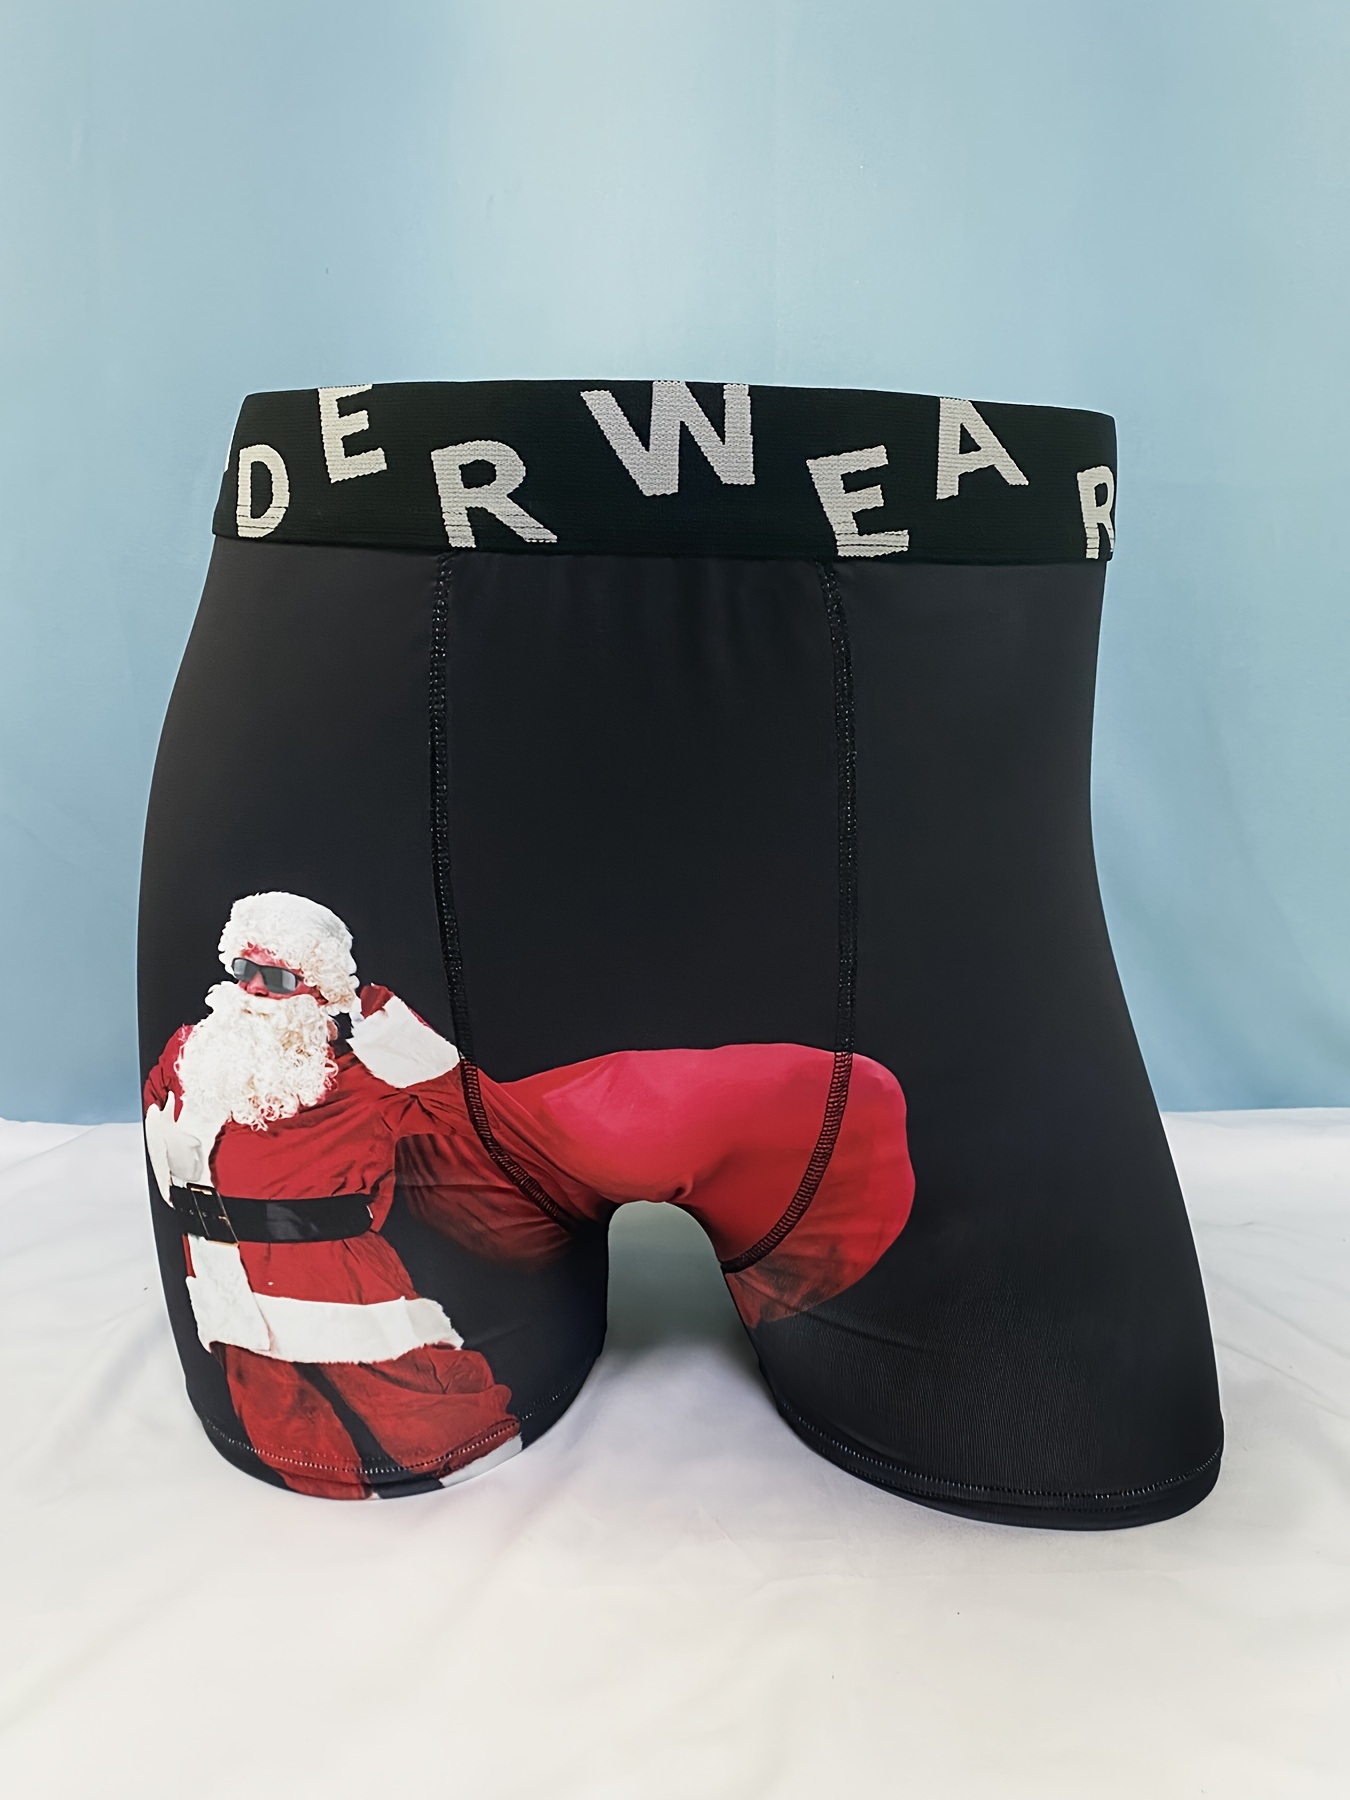 Large 1960s Mens Santa Novelty Print Boxer Shorts Balloon Seat